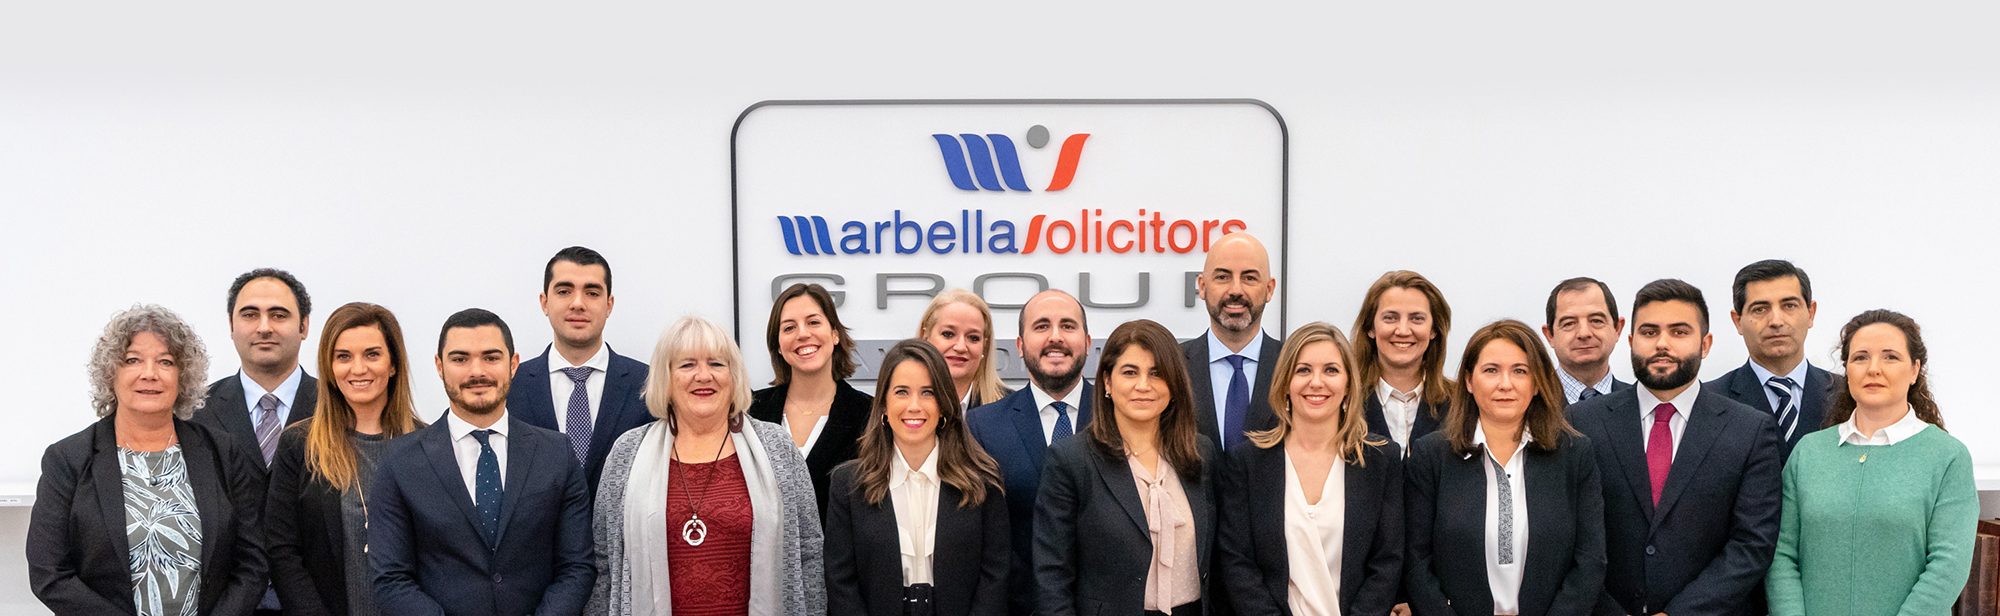 Marbella Solicitors